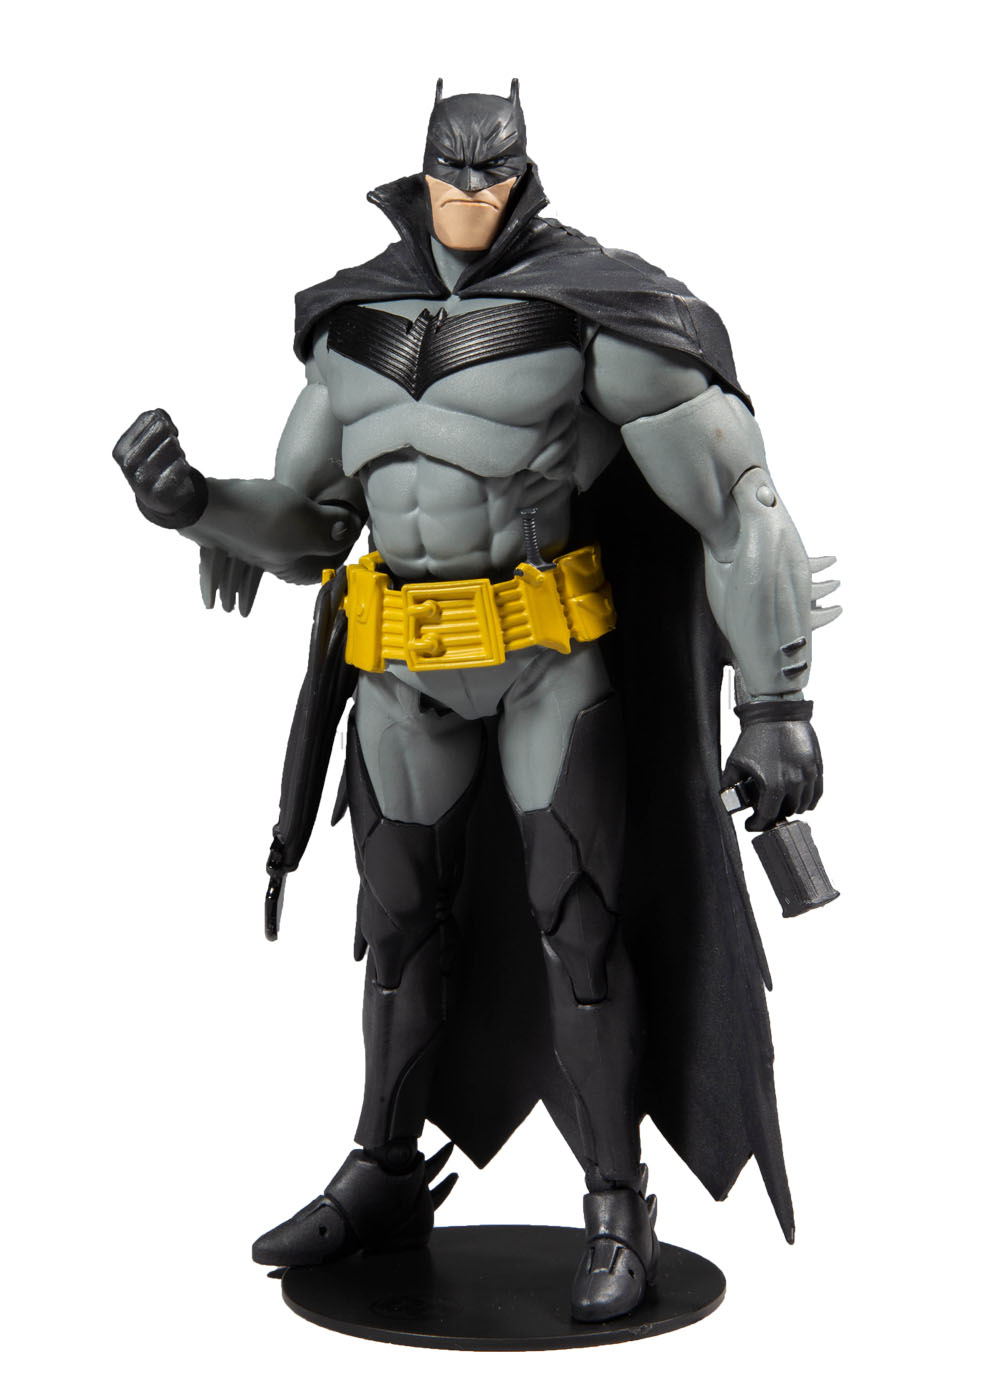 White batman. DC Multiverse фигурки Бэтмен. Batman MCFARLANE Toys DC Multiverse. Фигурка MCFARLANE Toys Бэтмен. Batman Rebirth MCFARLANE.